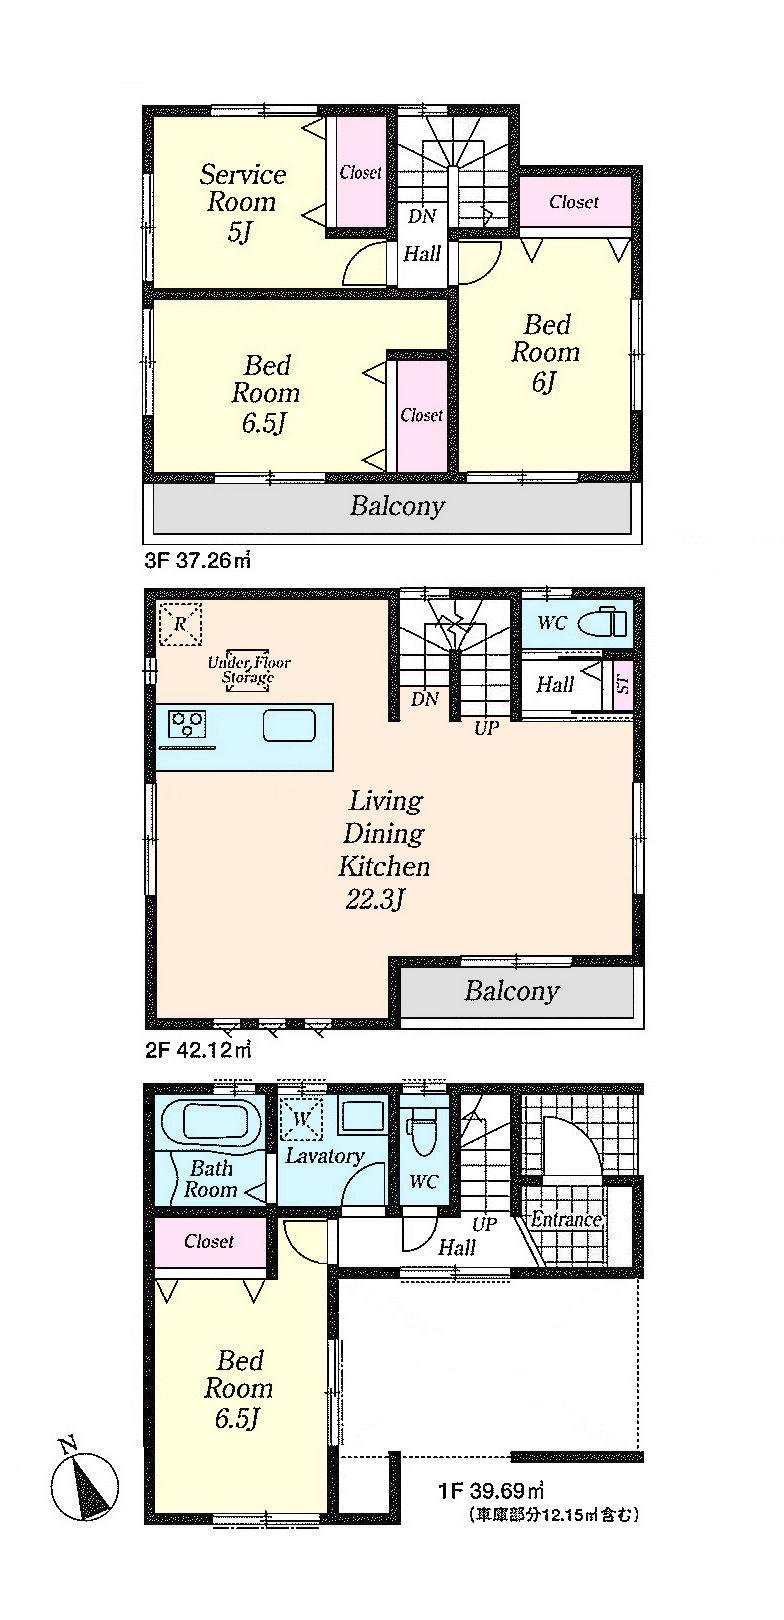 Floor plan. 37,800,000 yen, 3LDK + S (storeroom), Land area 71.5 sq m , Building area 119.07 sq m